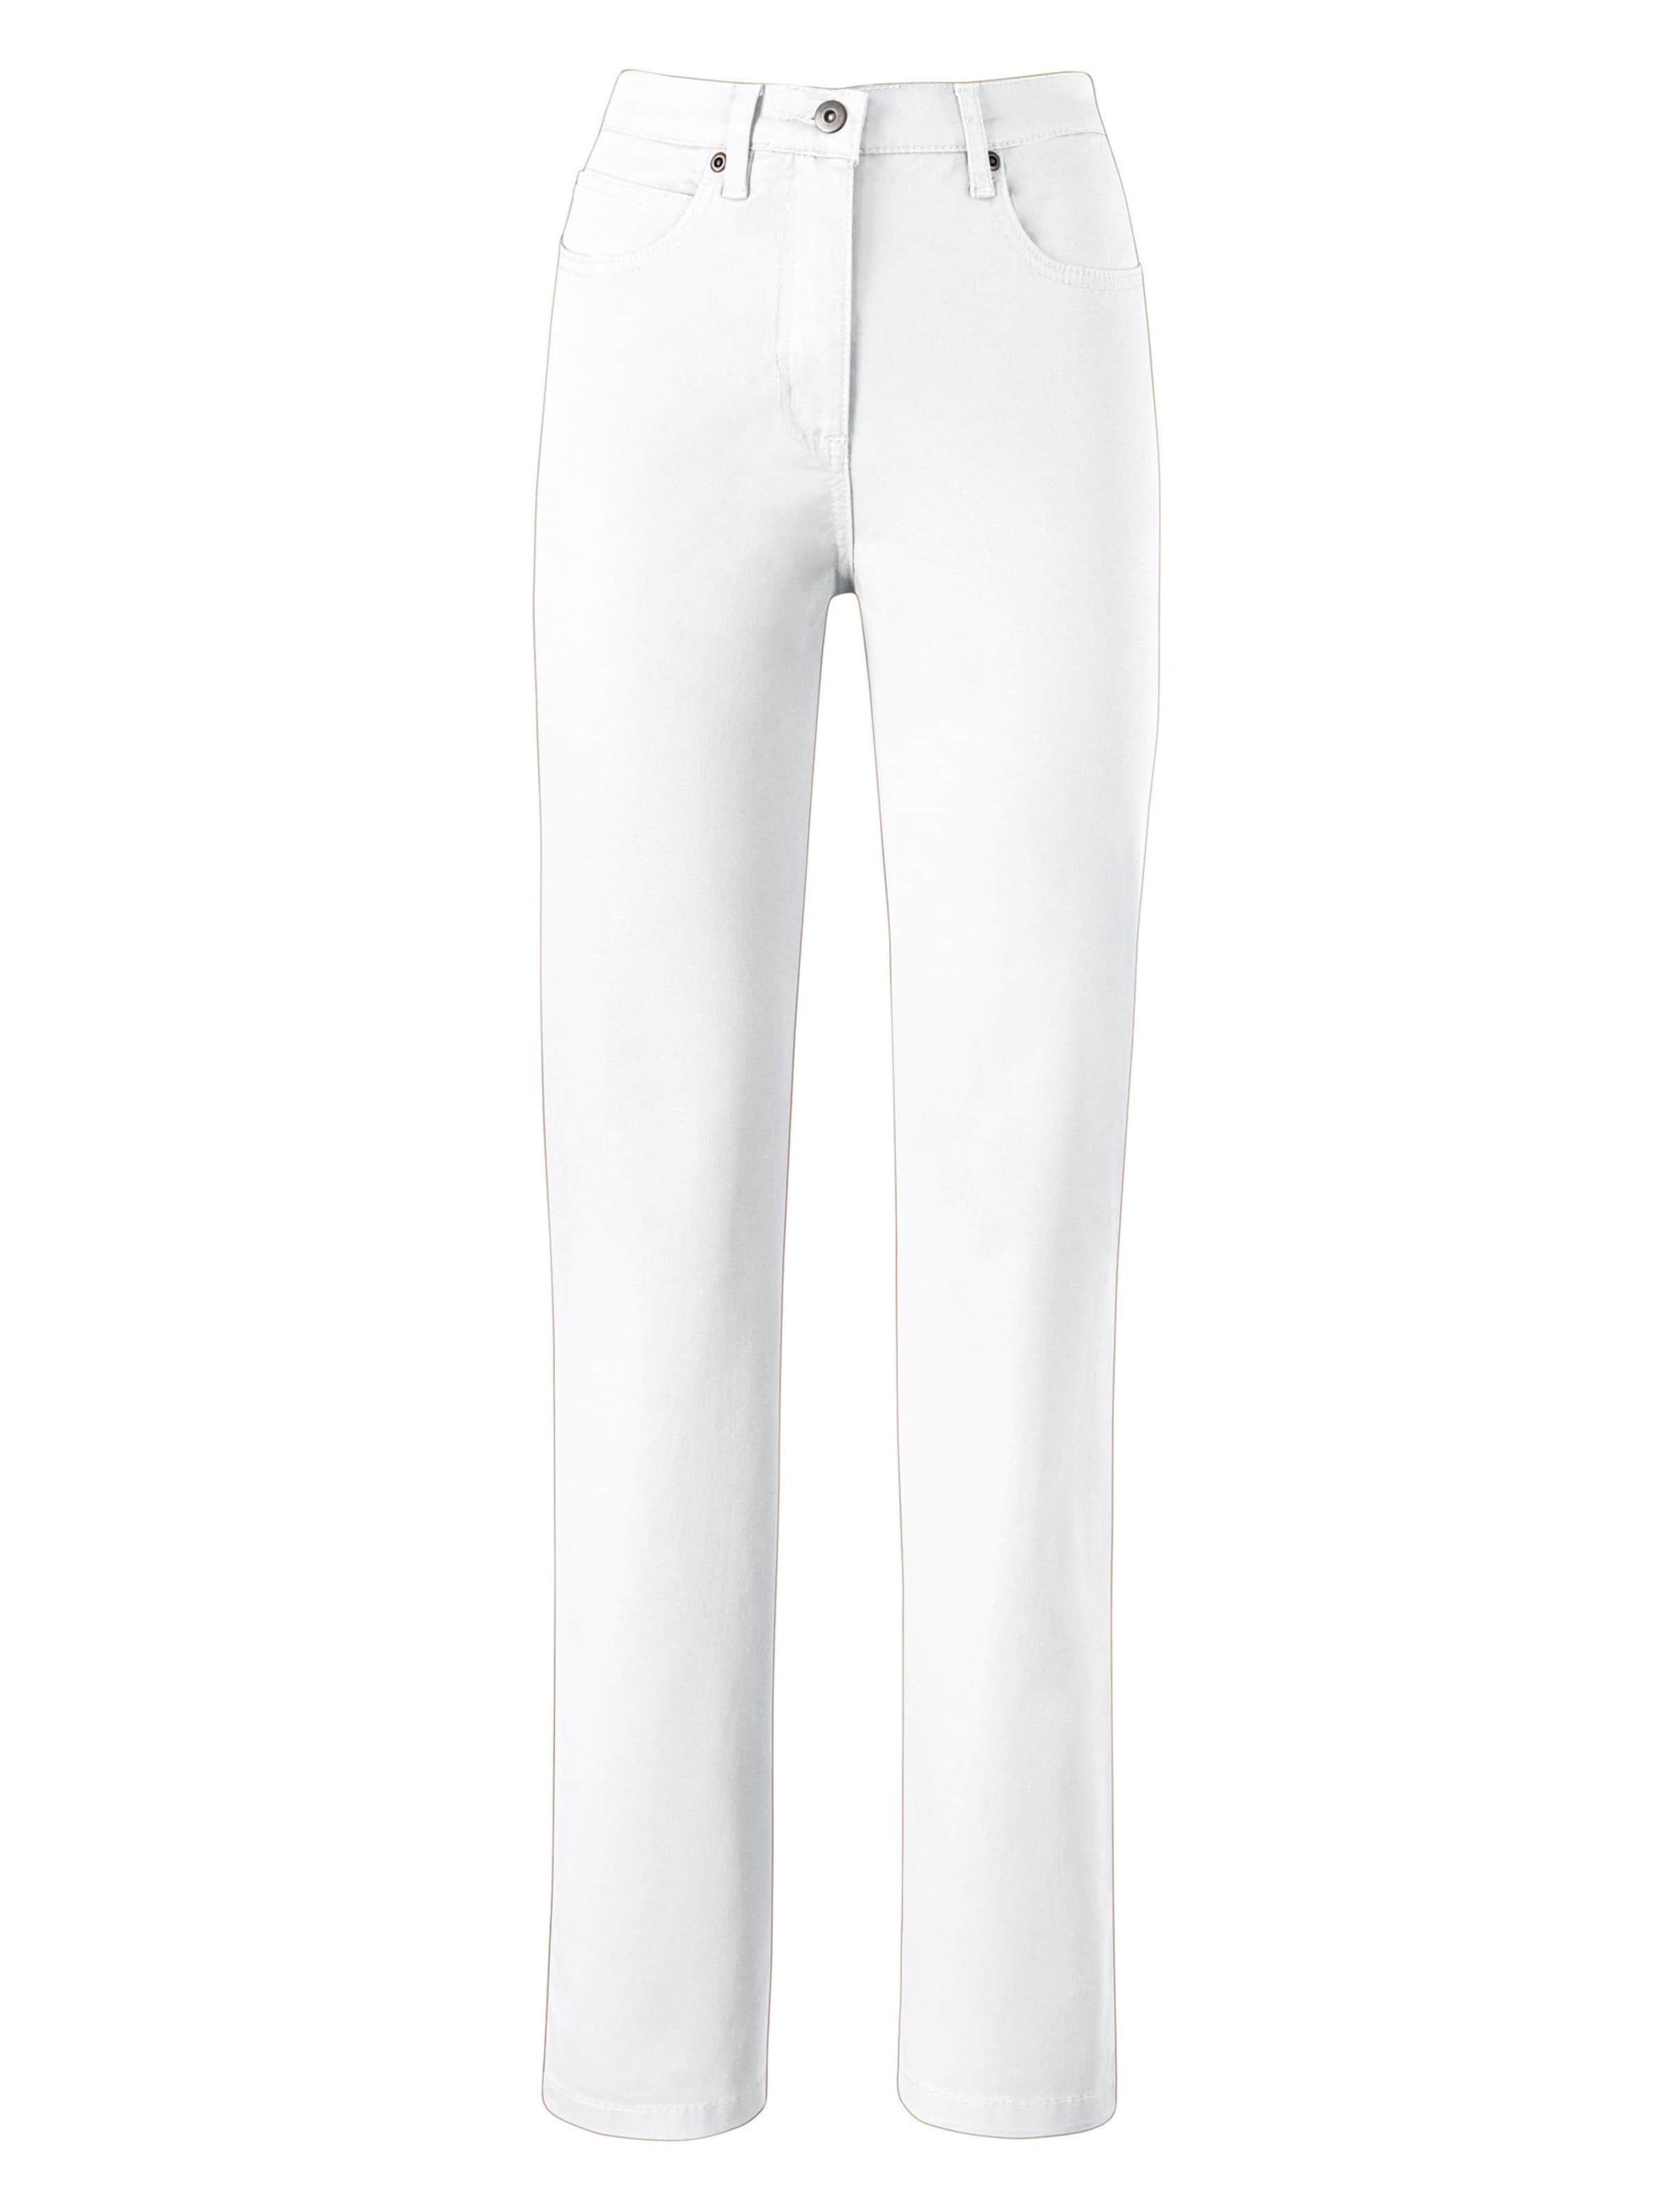 Damenmode Jeans 5-Pocket-Jeans in weiß 